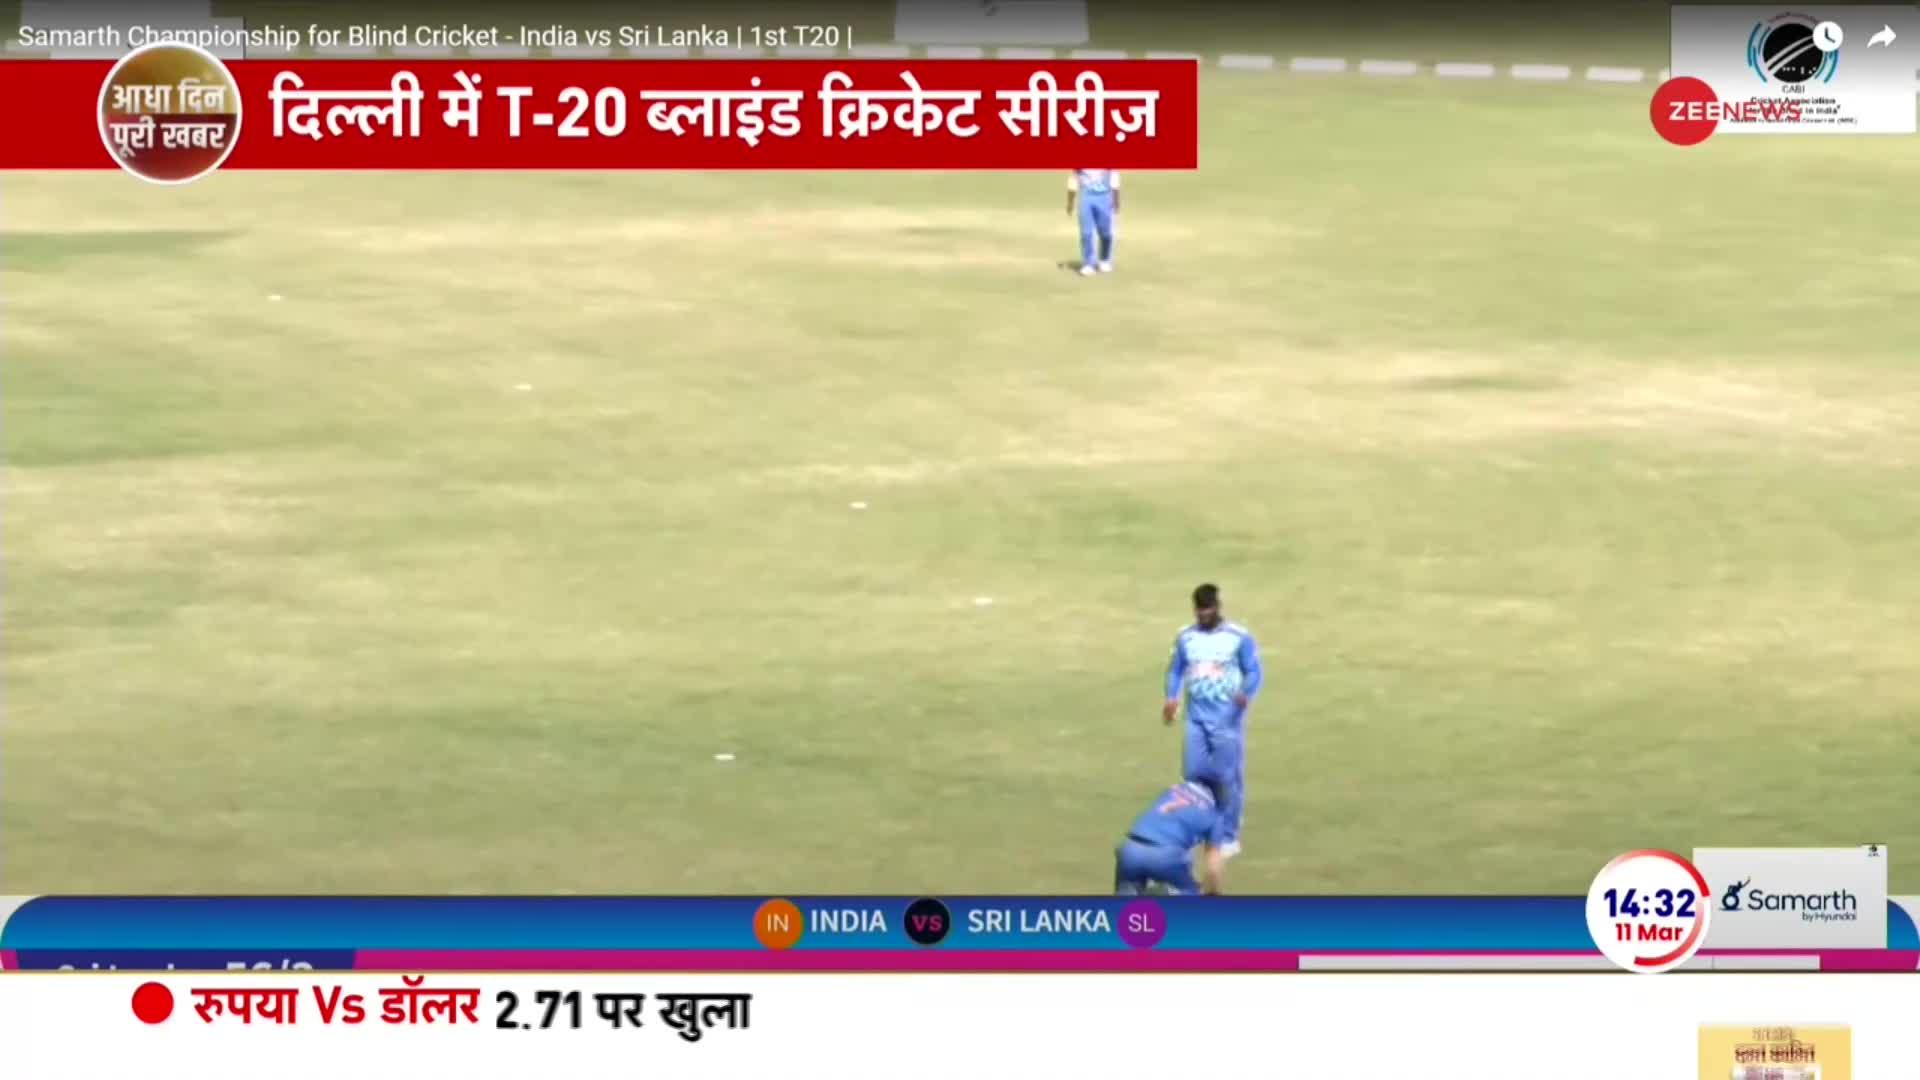 Blind Cricket News: भारत-श्रीलंका के बीच 5 मैचों की सीरीज